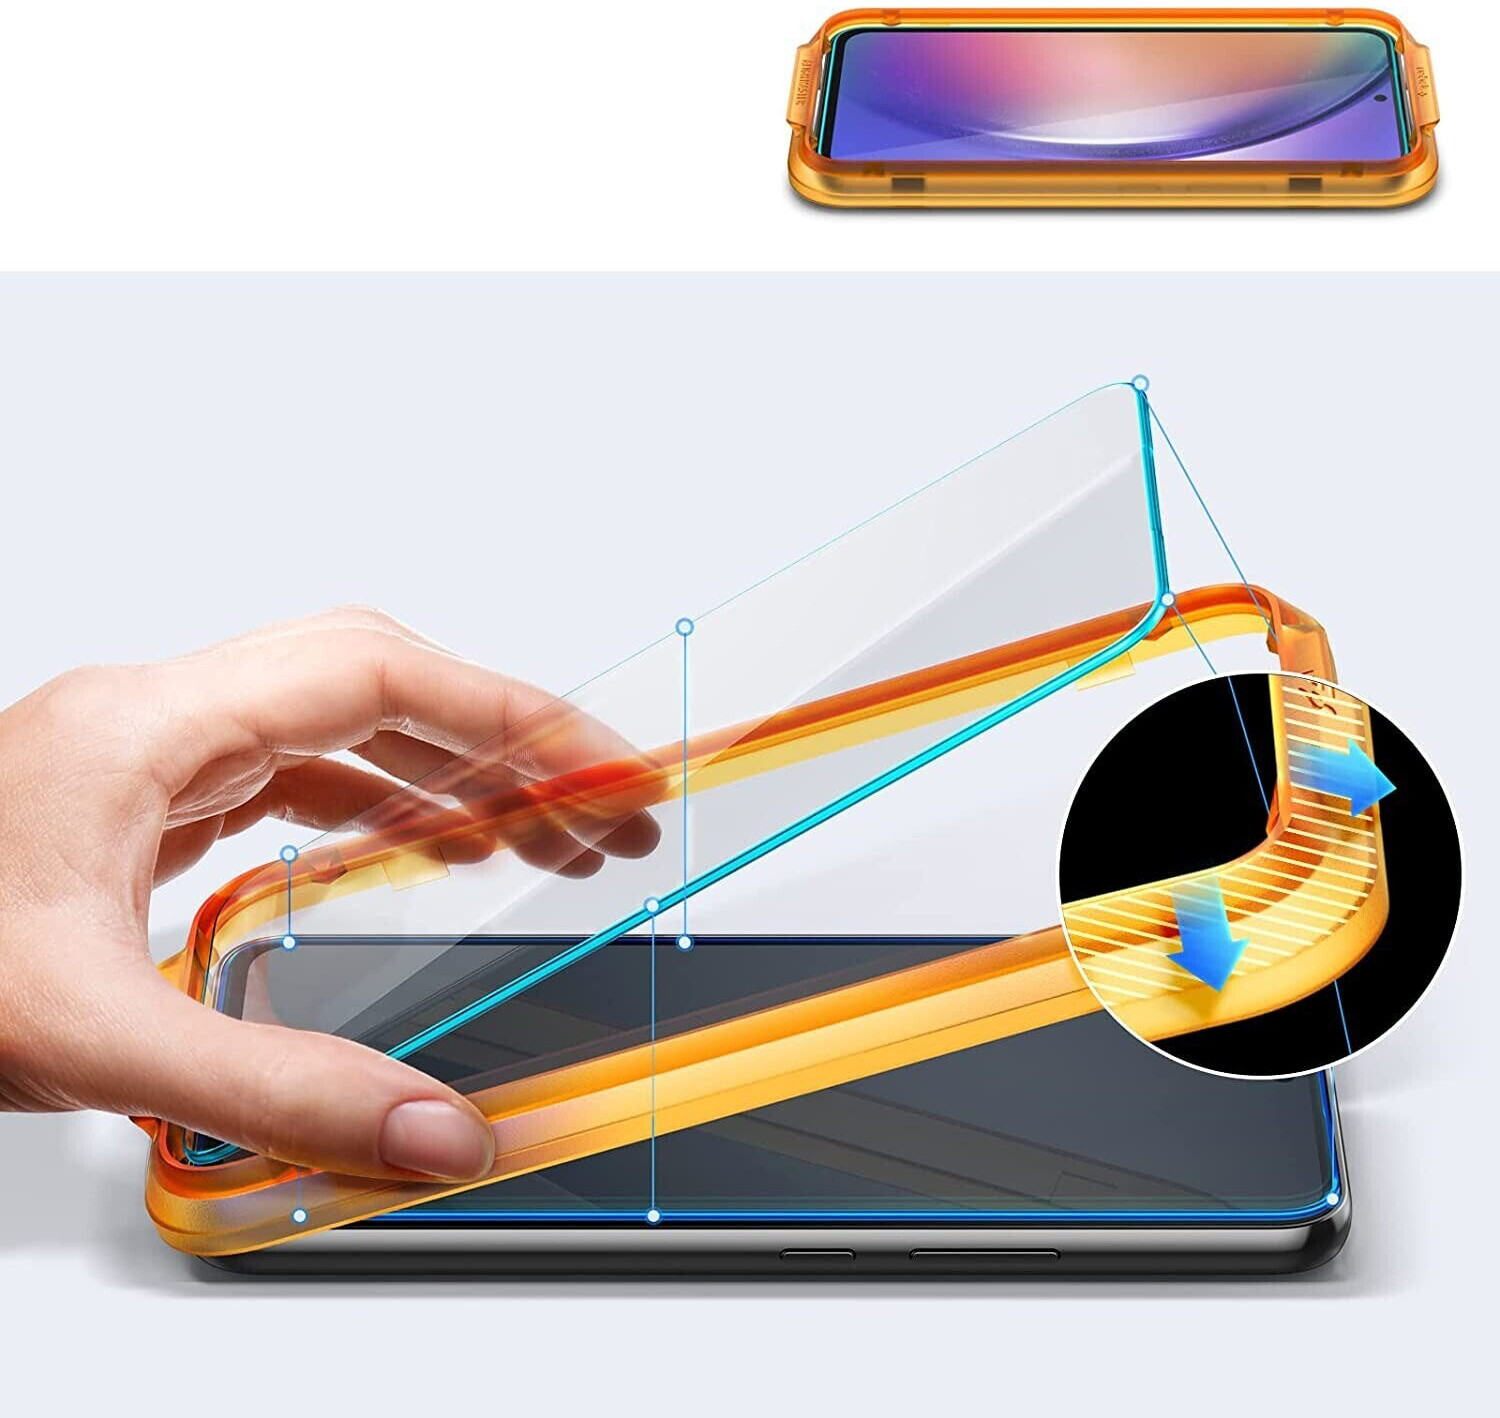 Tempered Glass Spigen Glas.tr ez Fit 2er-Pack iPhone 15 Pro Max Klar -  Shop